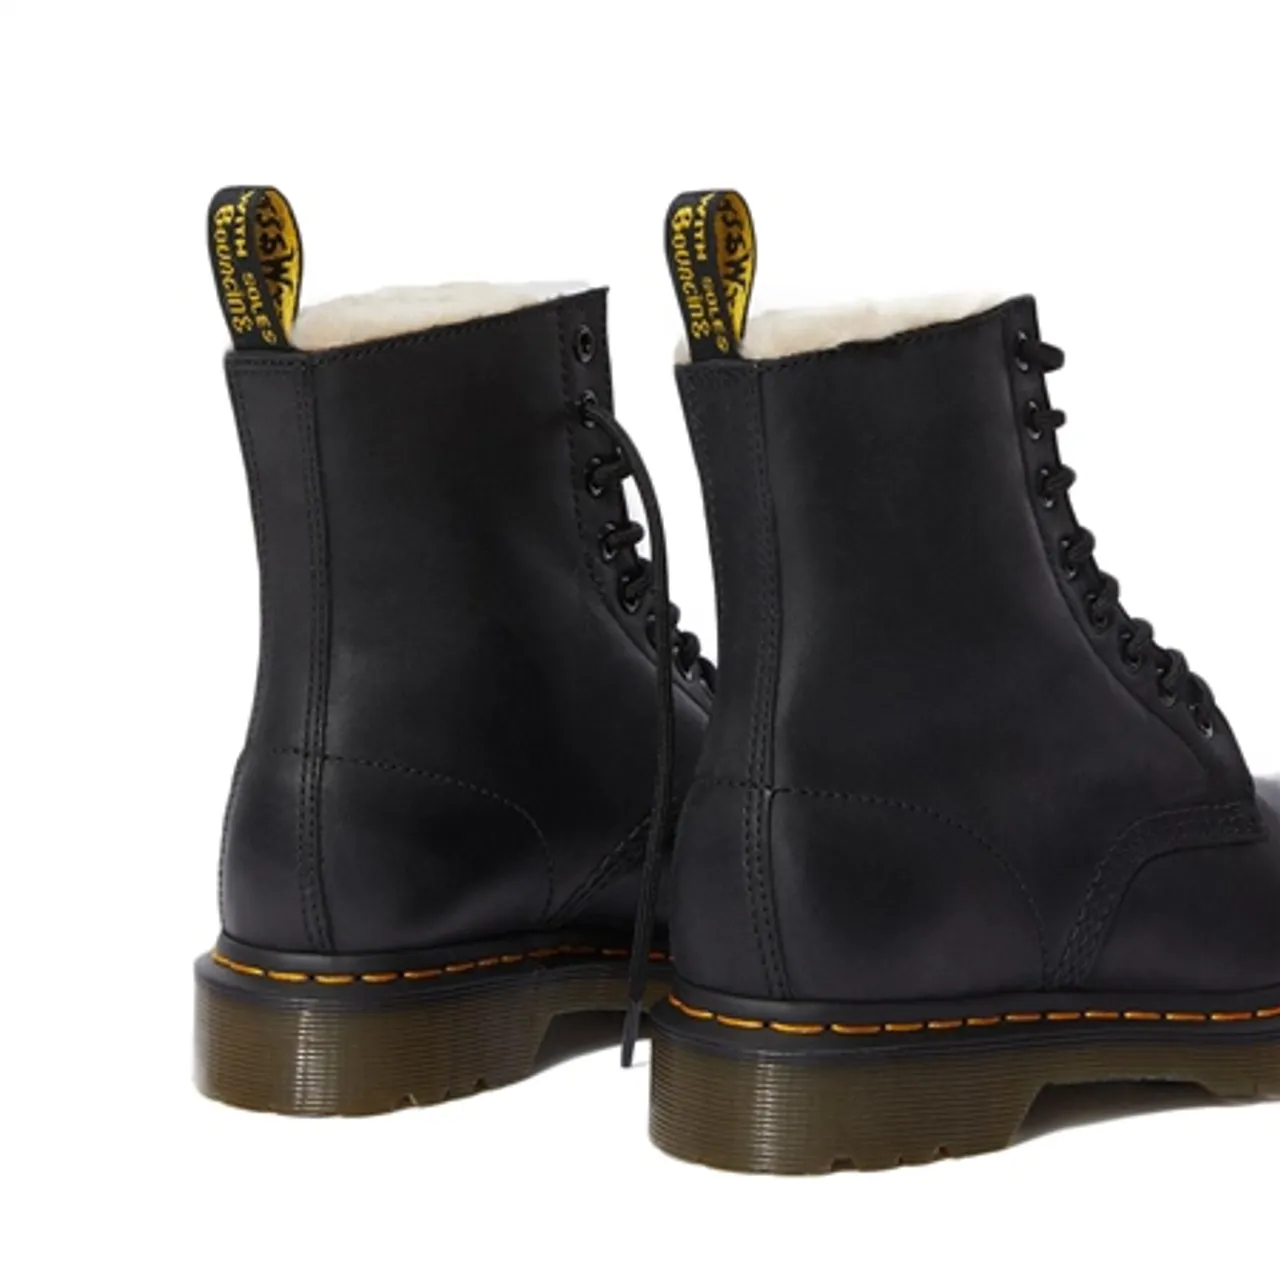 Dr Martens 1460 Serena Wyoming Boots - Black - UK 4 (EU 37)